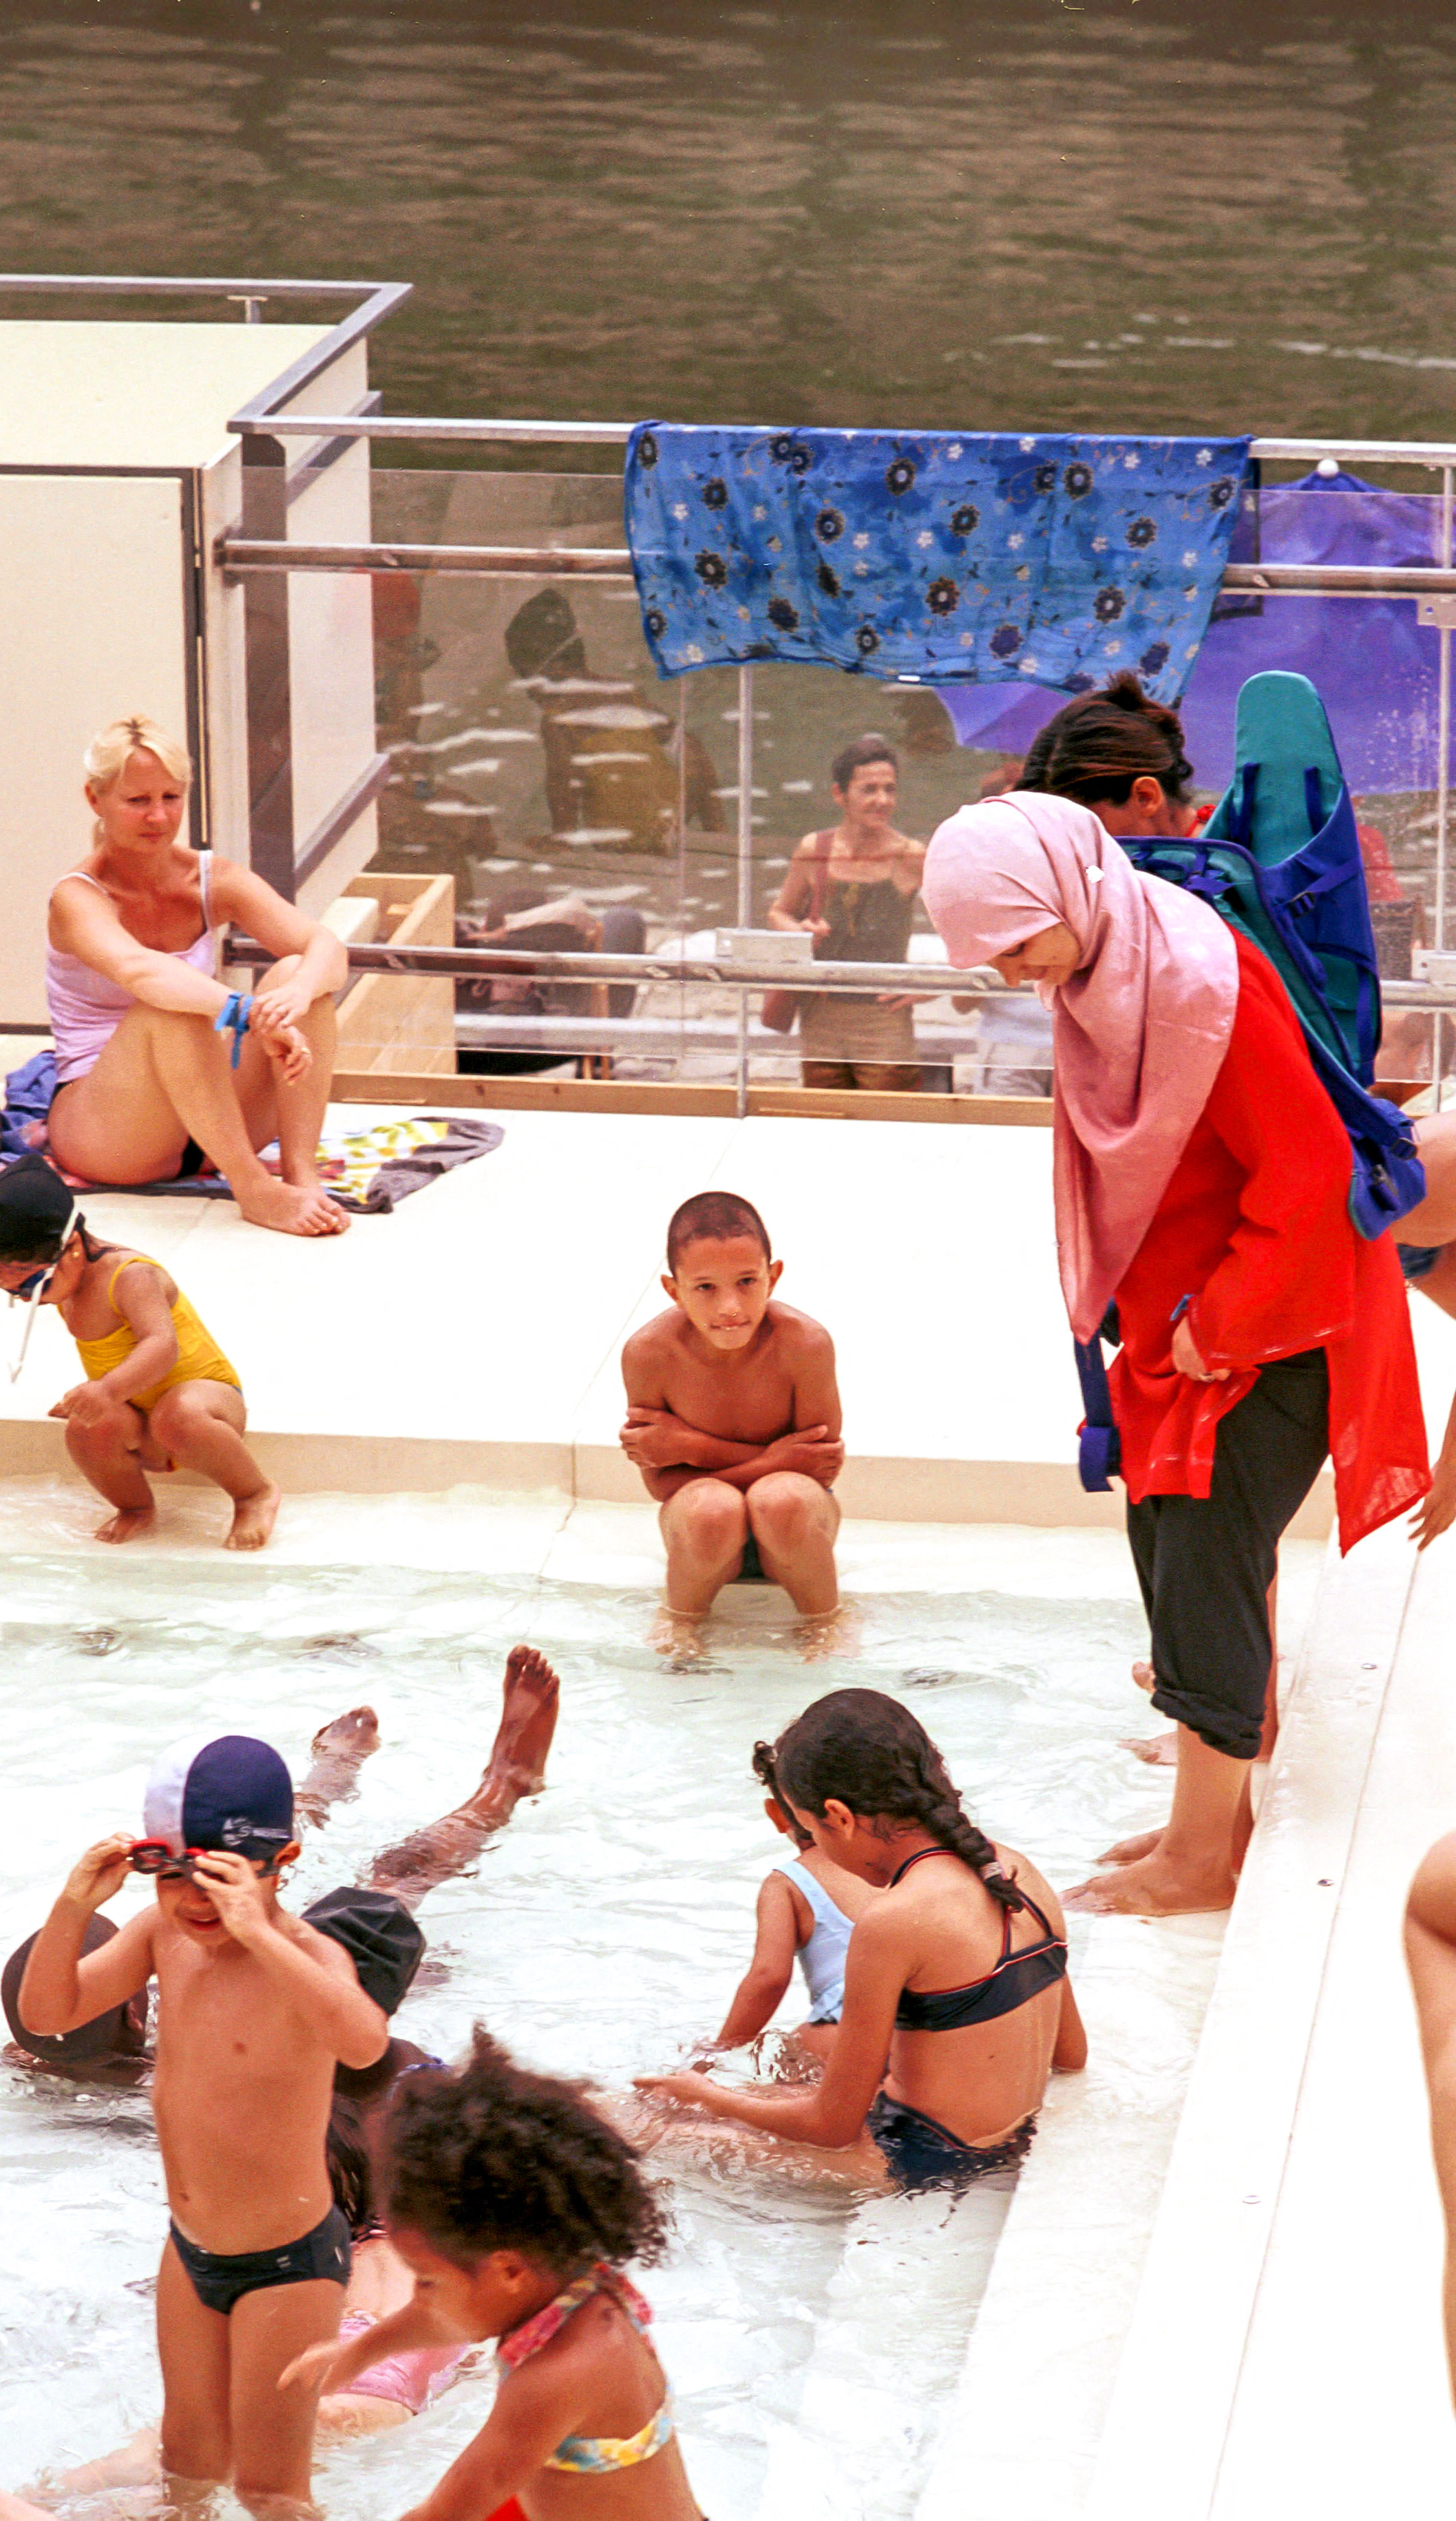 Francia prohíbe el burkini en las piscinas públicas en nombre de la igualdad